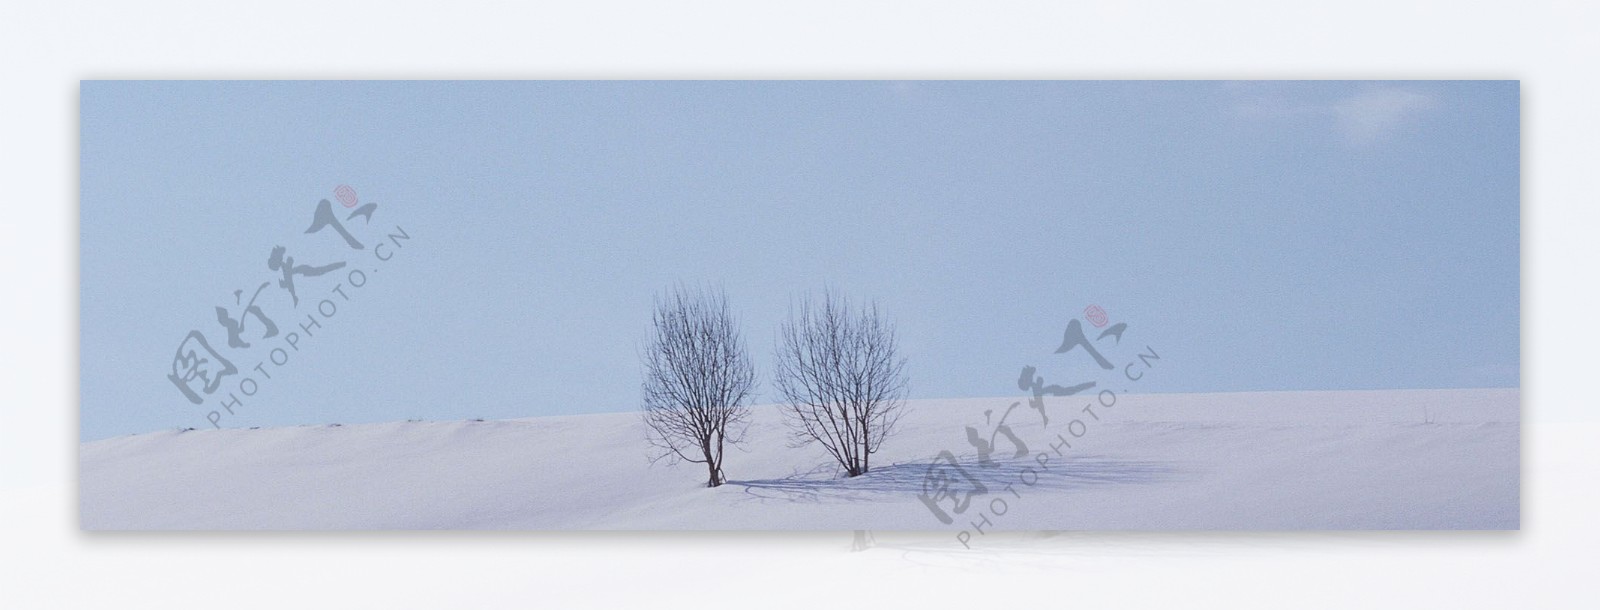 冬天雪景背景图片素材28